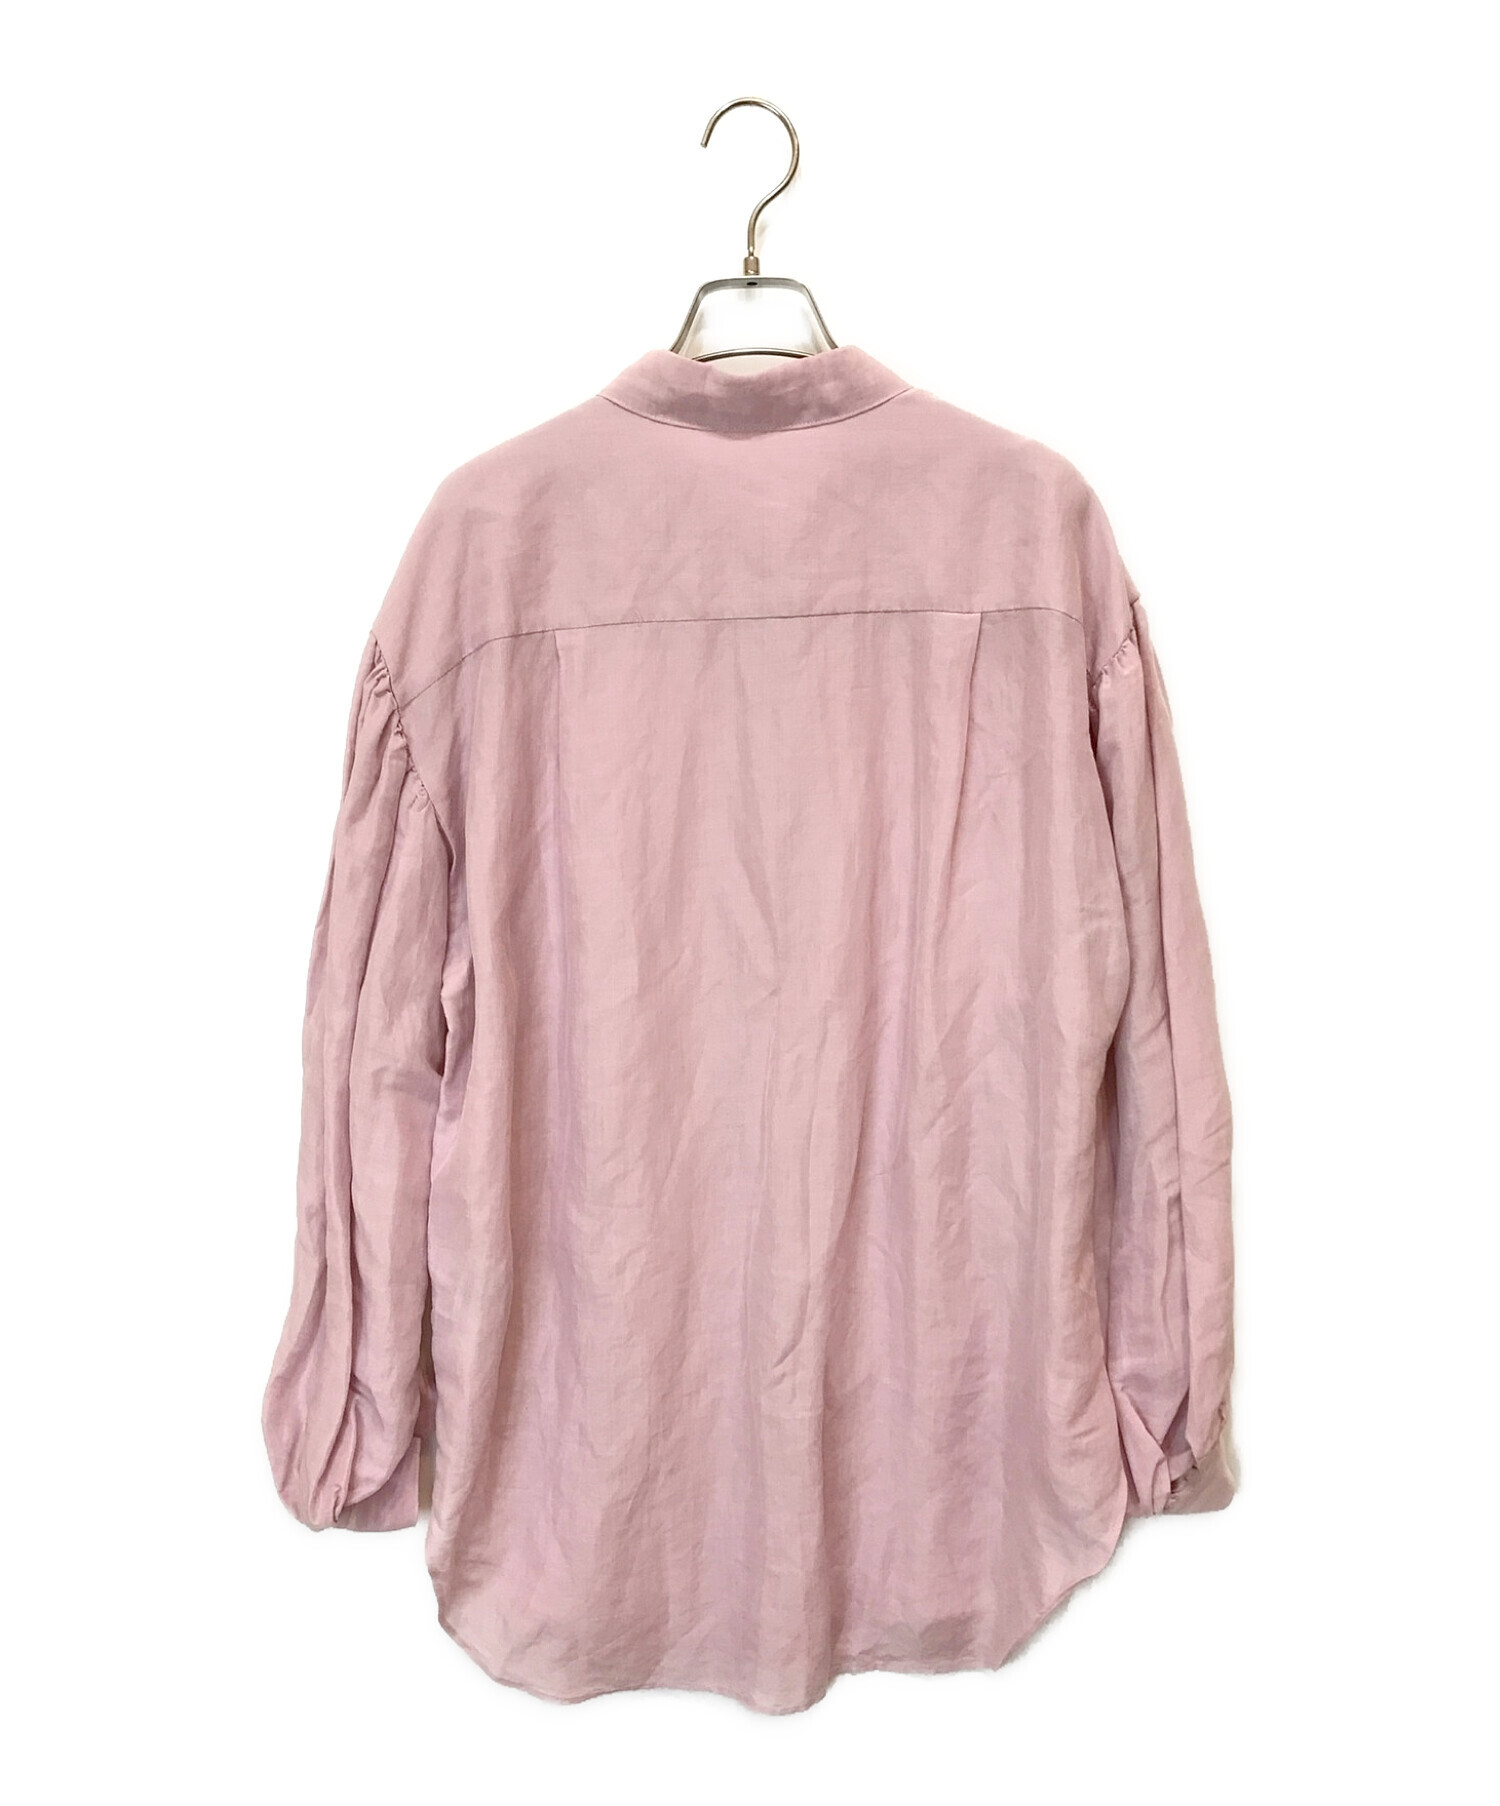 IENA (イエナ) ラミーリヨセルボリュームスリーブシャツ ピンク サイズ:38